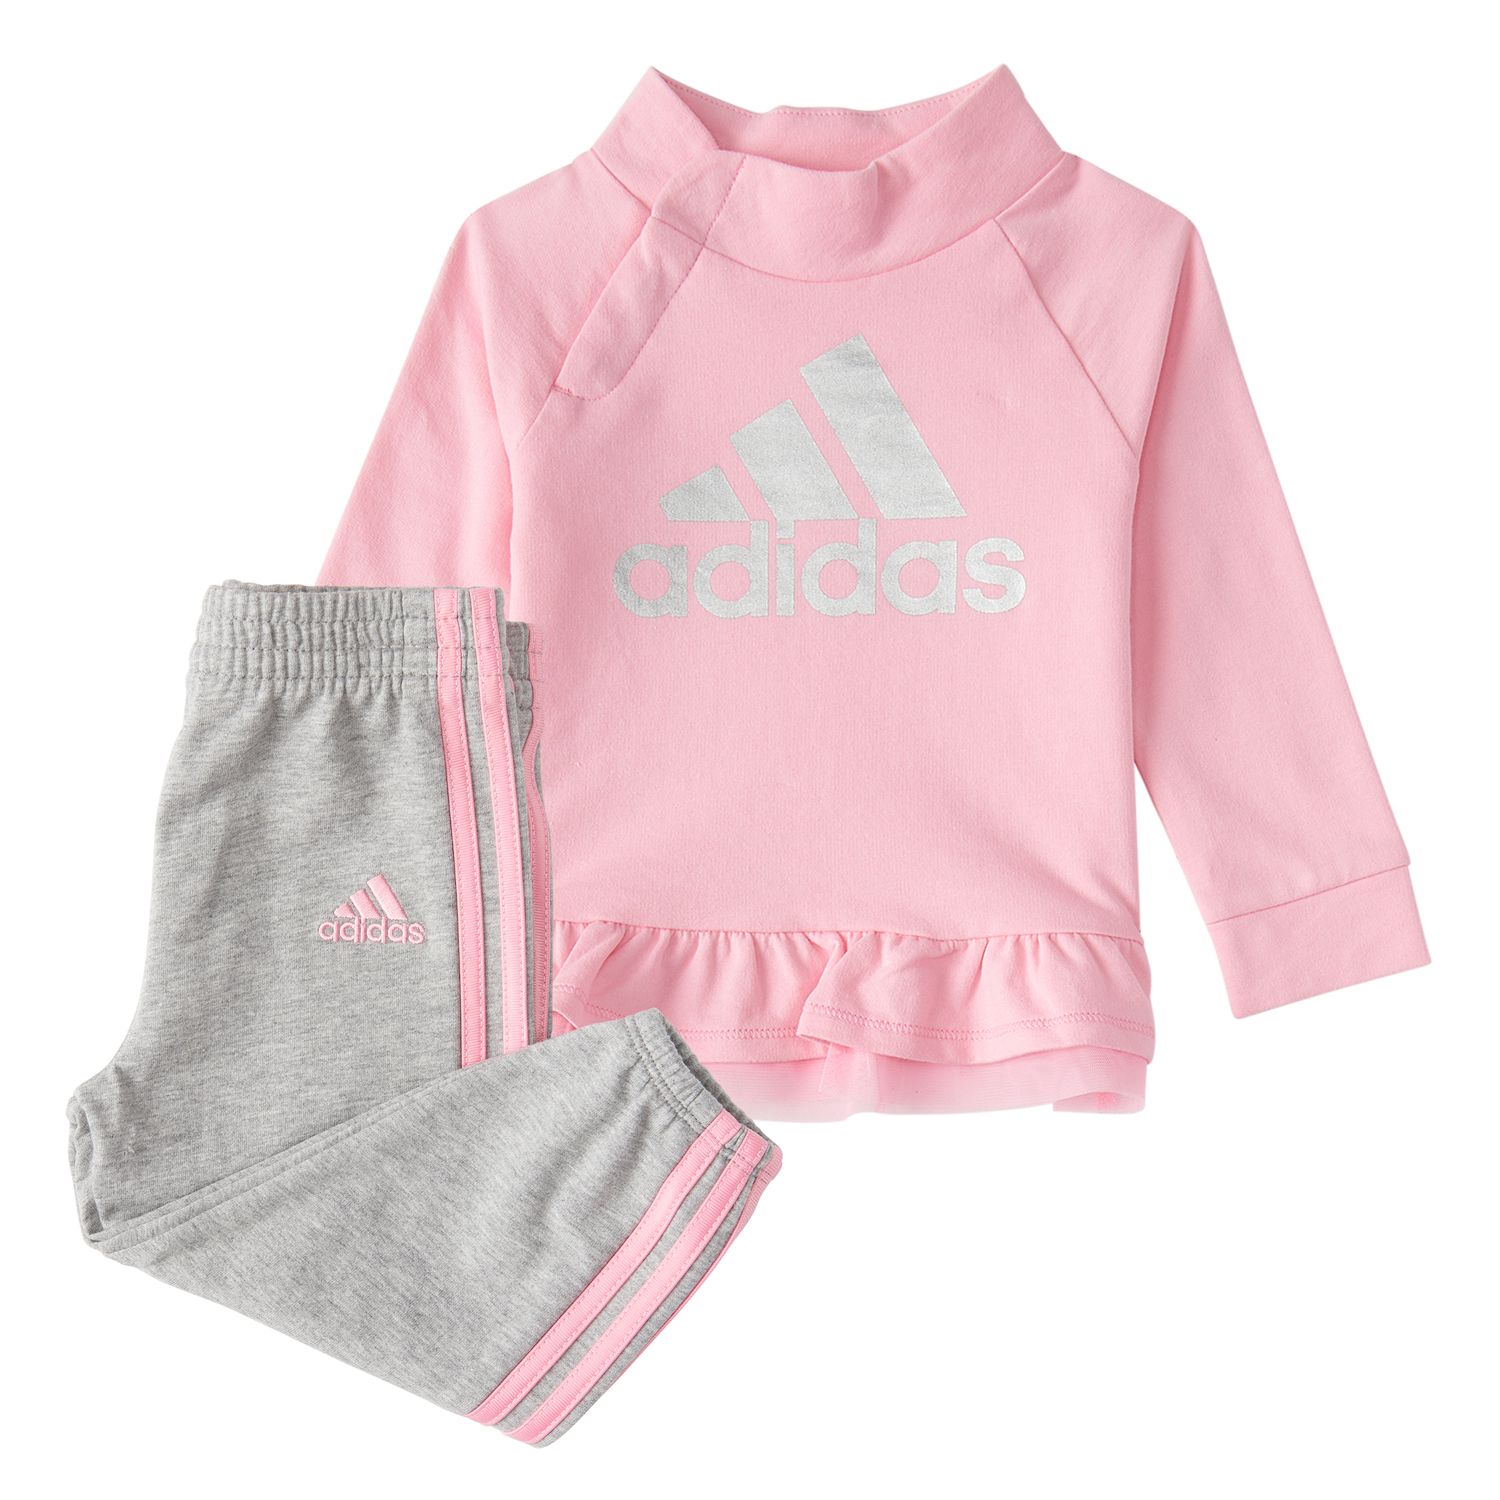 adidas baby girl clothes